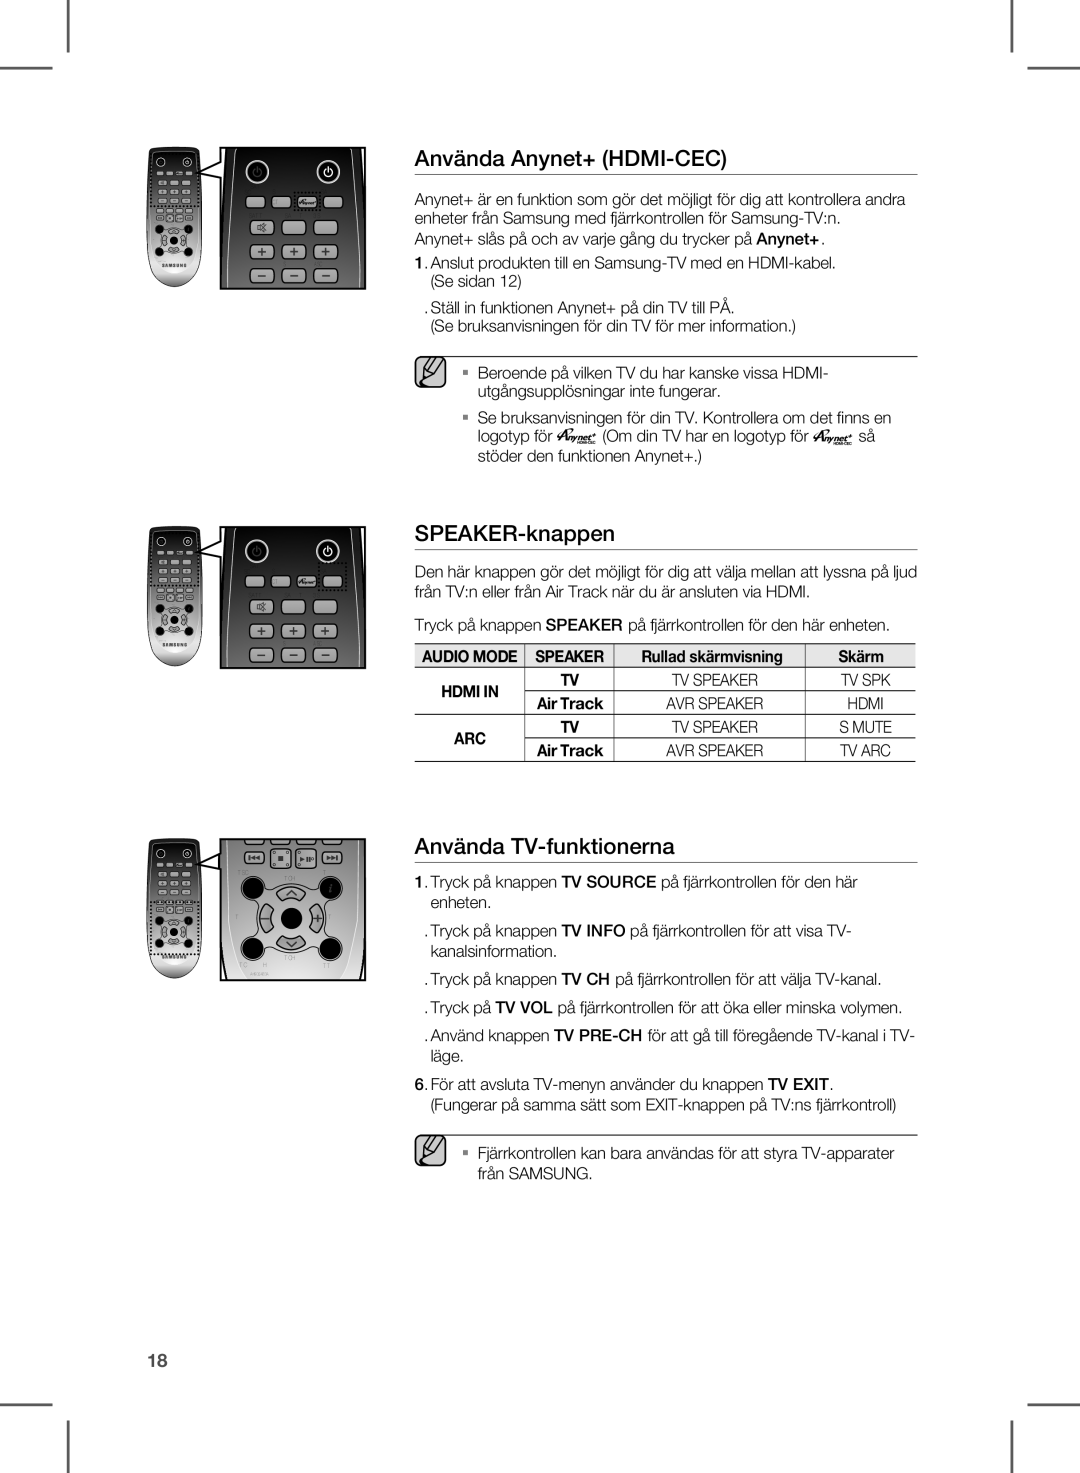 Samsung HW-E350/XE manual Använda Anynet+ HDMI-CEC, SPEAKER-knappen, Använda TV-funktionerna, Speaker 